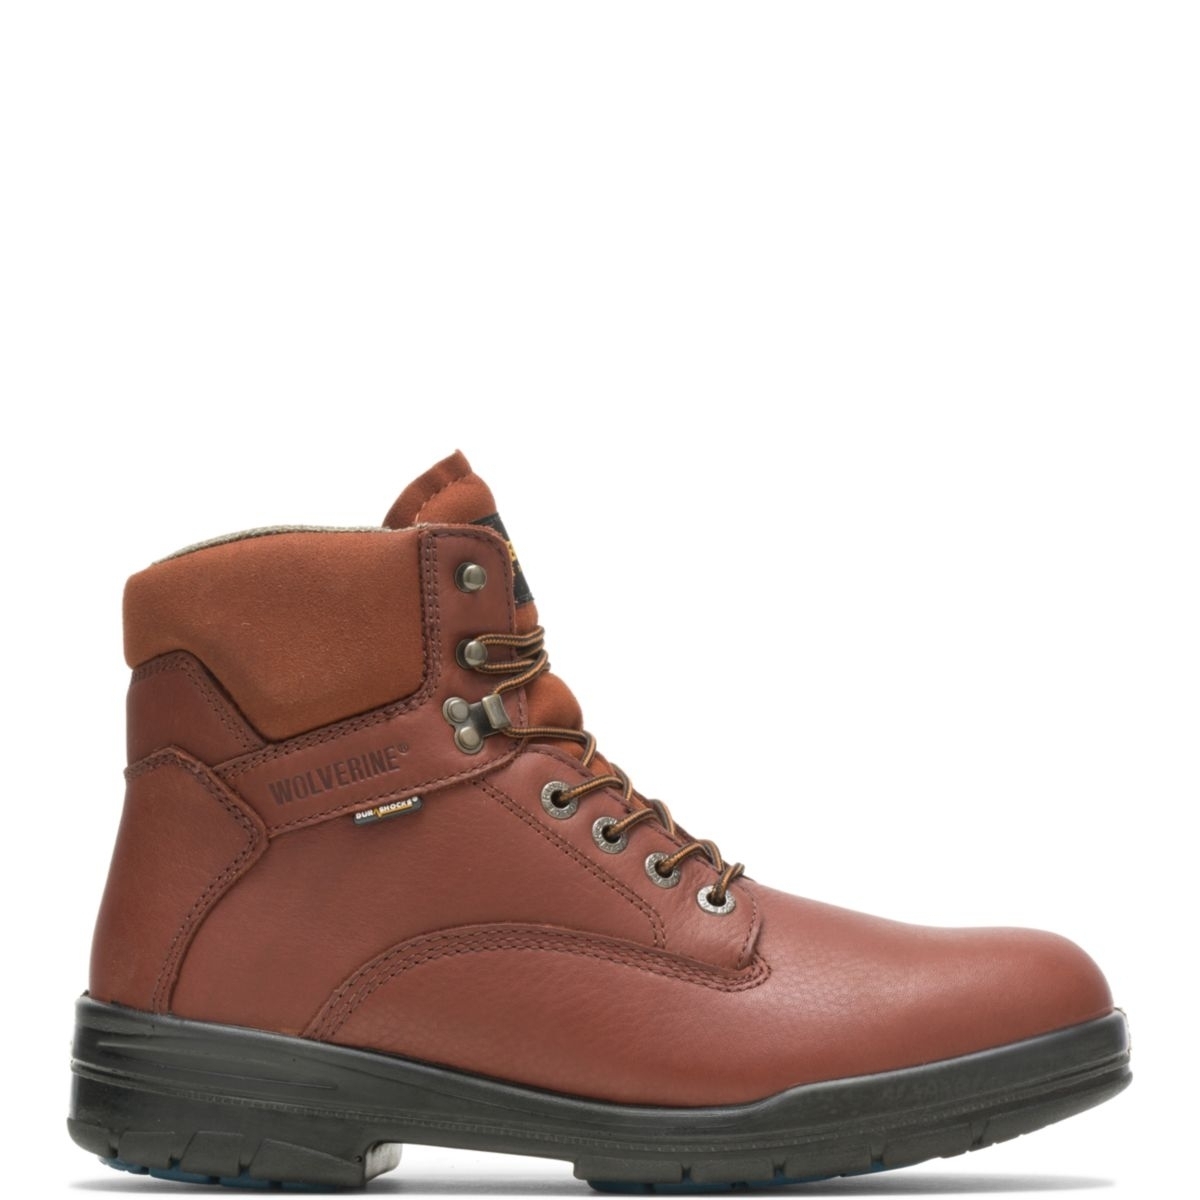 WOLVERINE Men's 6 DuraShocksÂ® Steel Toe Direct-Attach Work Boot Brown - W03120 BROWN - BROWN, 9